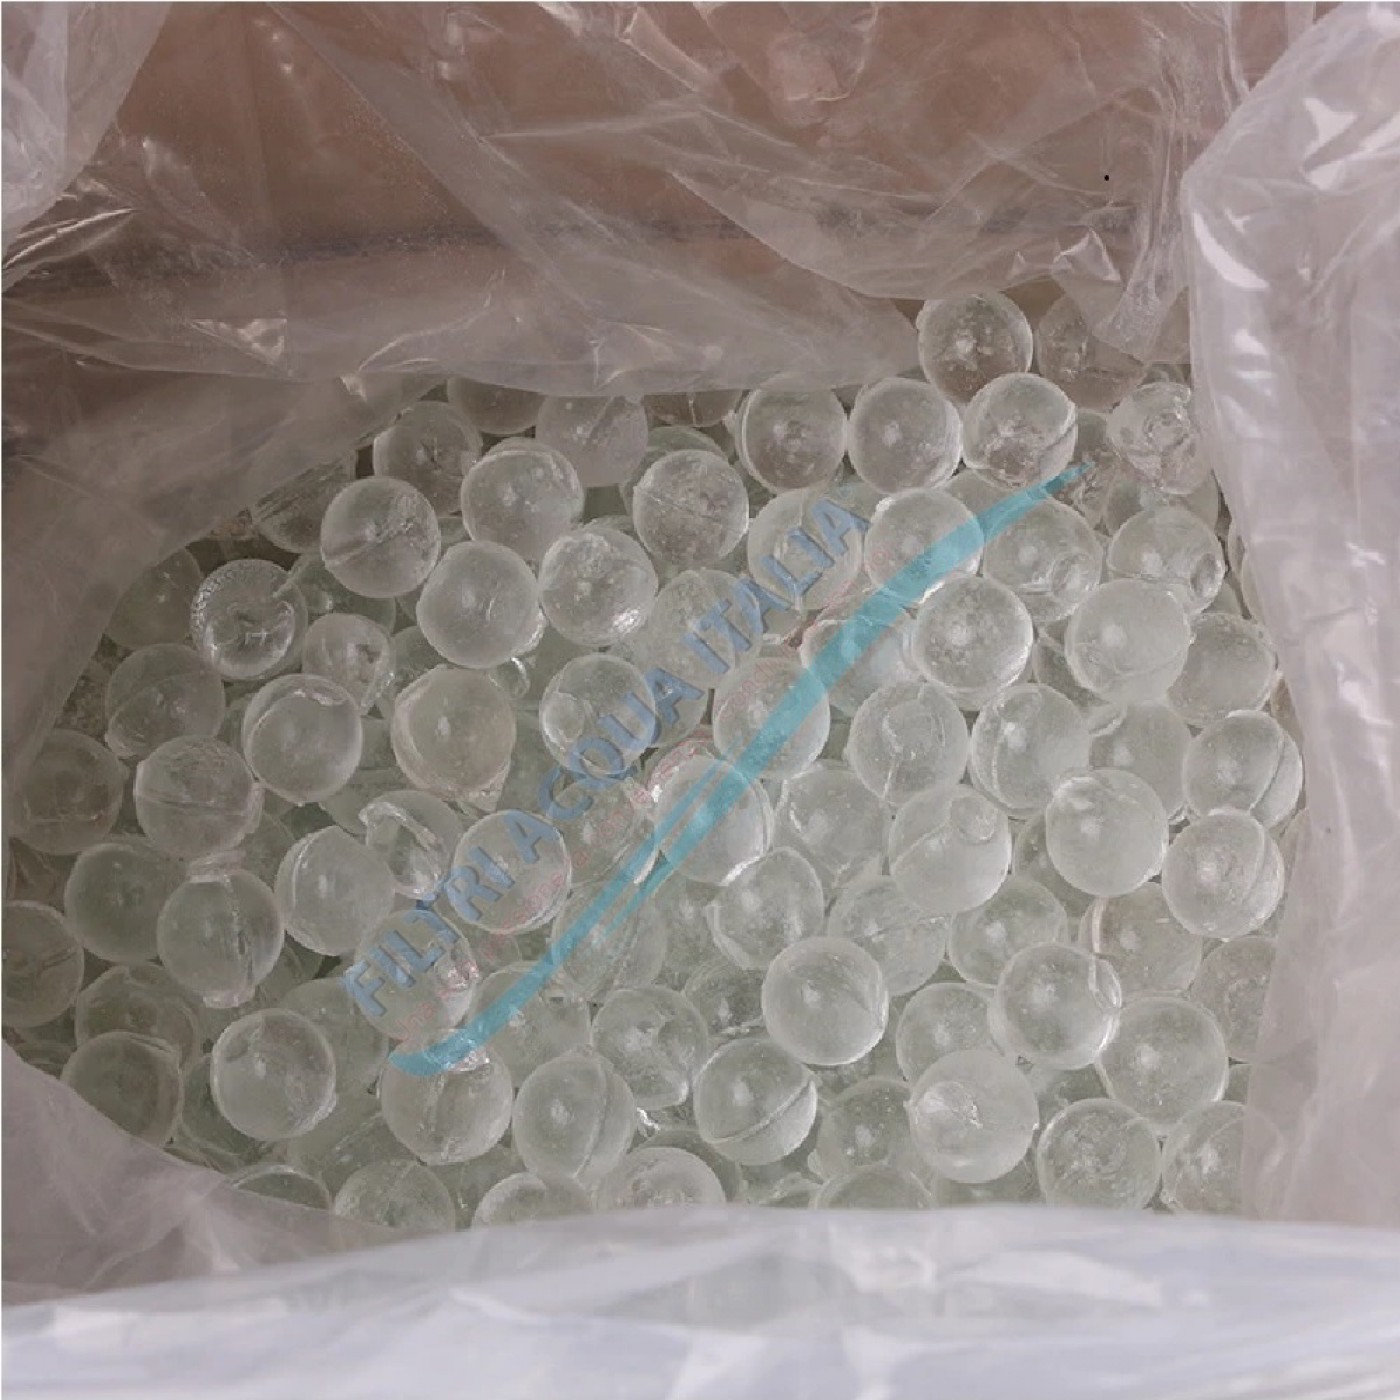 Ricarica Polifosfato a Sfere da 500 grammi per Filtri Anticalcare